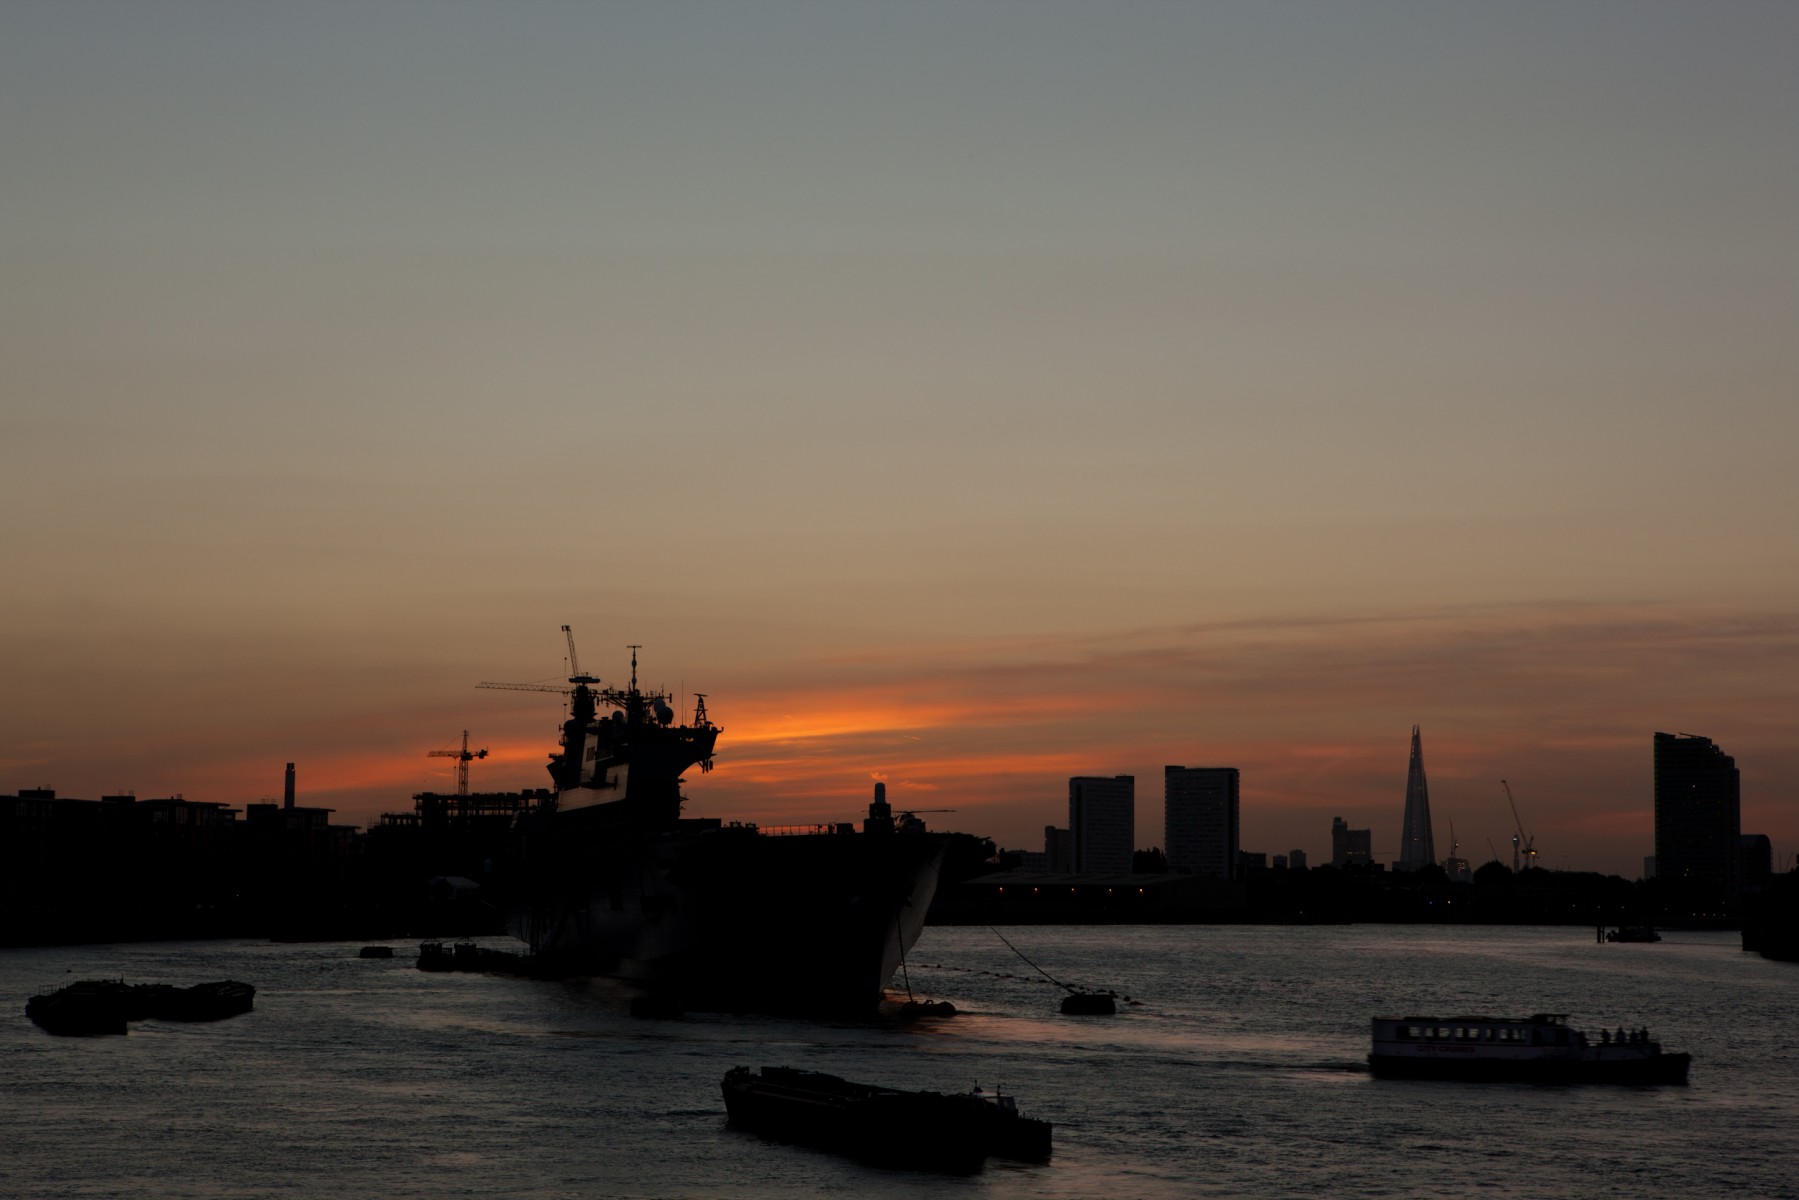 HMS Ocean on the Thames